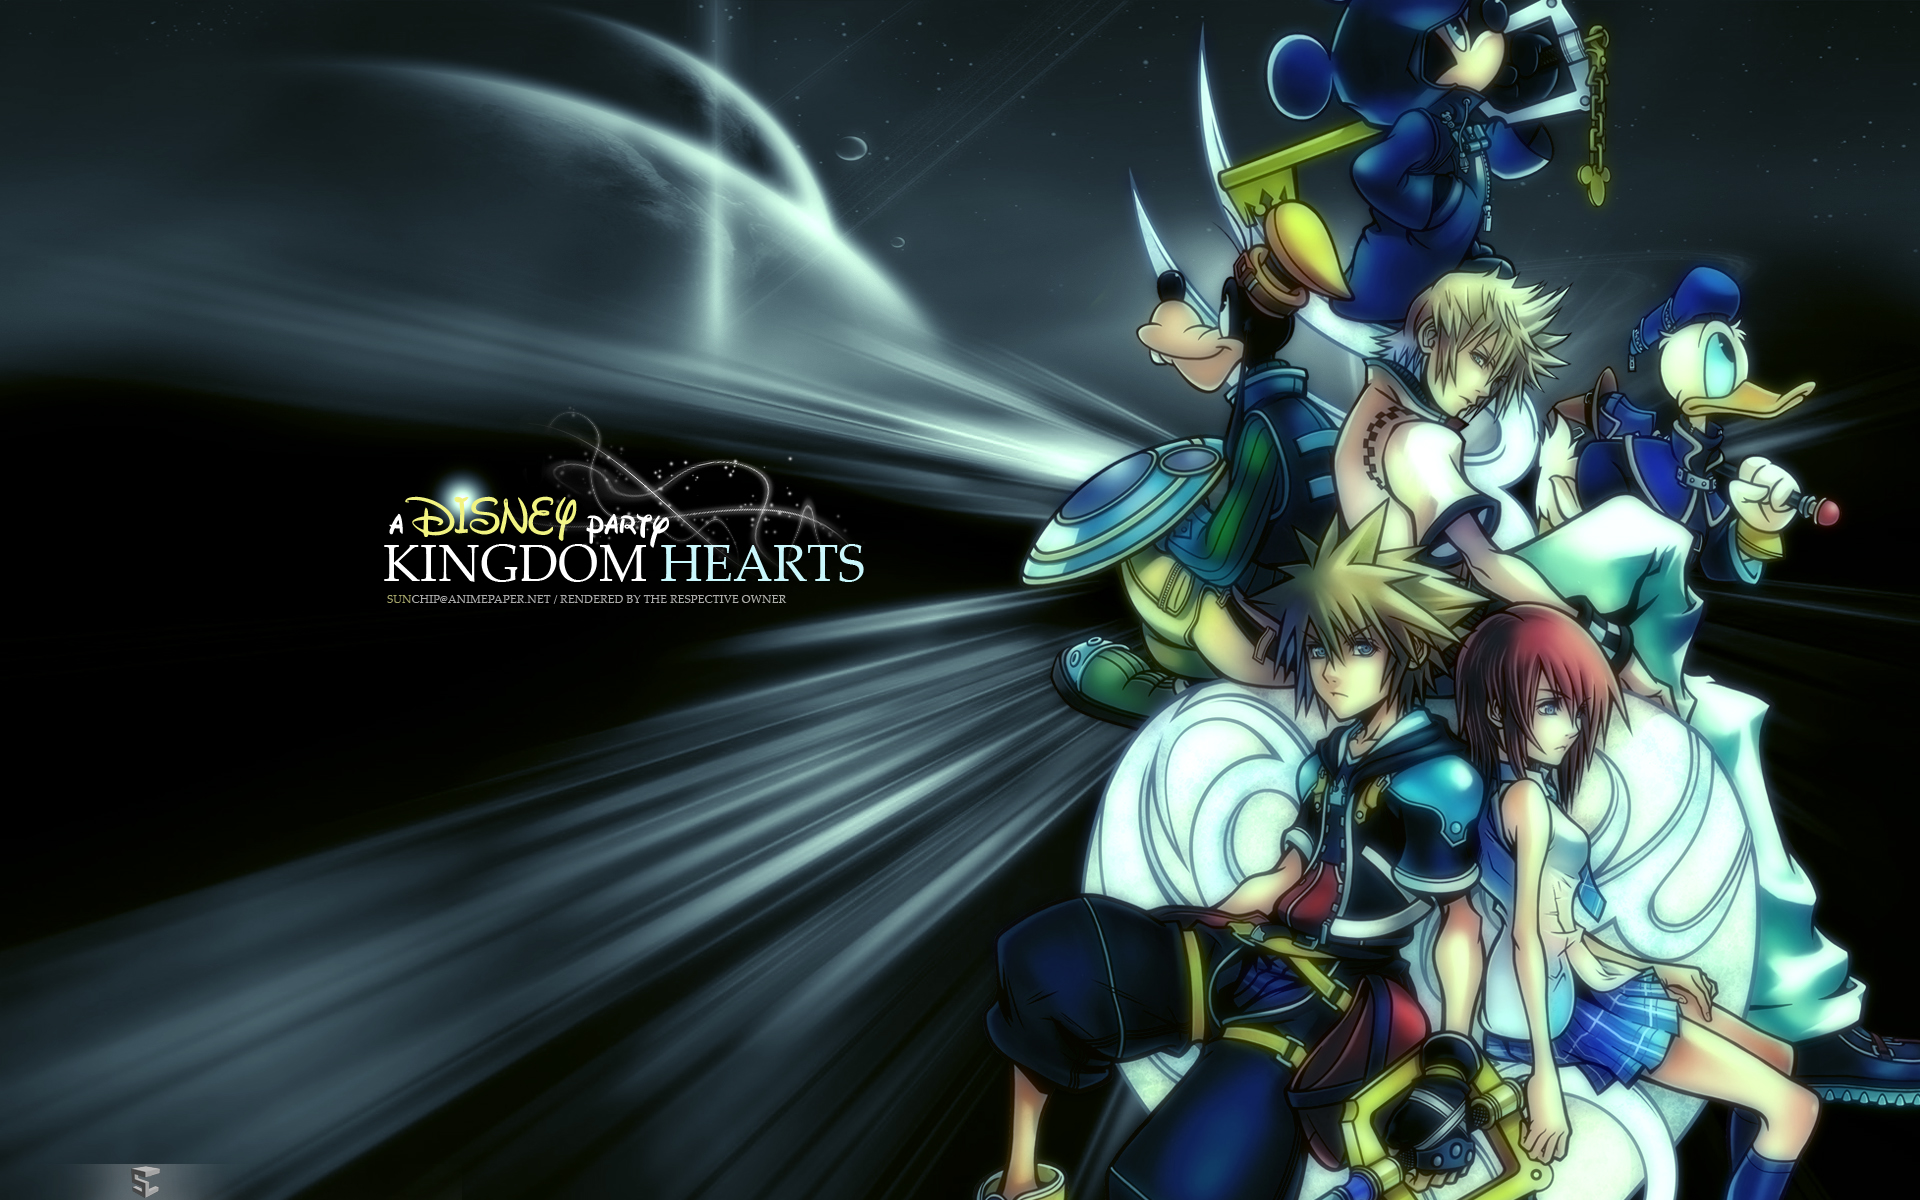 Kingdom Hearts: Một trong những franchise game nổi tiếng nhất của thế giới, Kingdom Hearts sẽ đưa bạn vào một cuộc phiêu lưu kỳ thú giữa thế giới thực và thế giới ảo. Điểm nhấn của game là sự giao thoa giữa các nhân vật Disney và Final Fantasy đầy sắc màu. Hãy tận hưởng những hình ảnh đẹp nhất của trò chơi này.